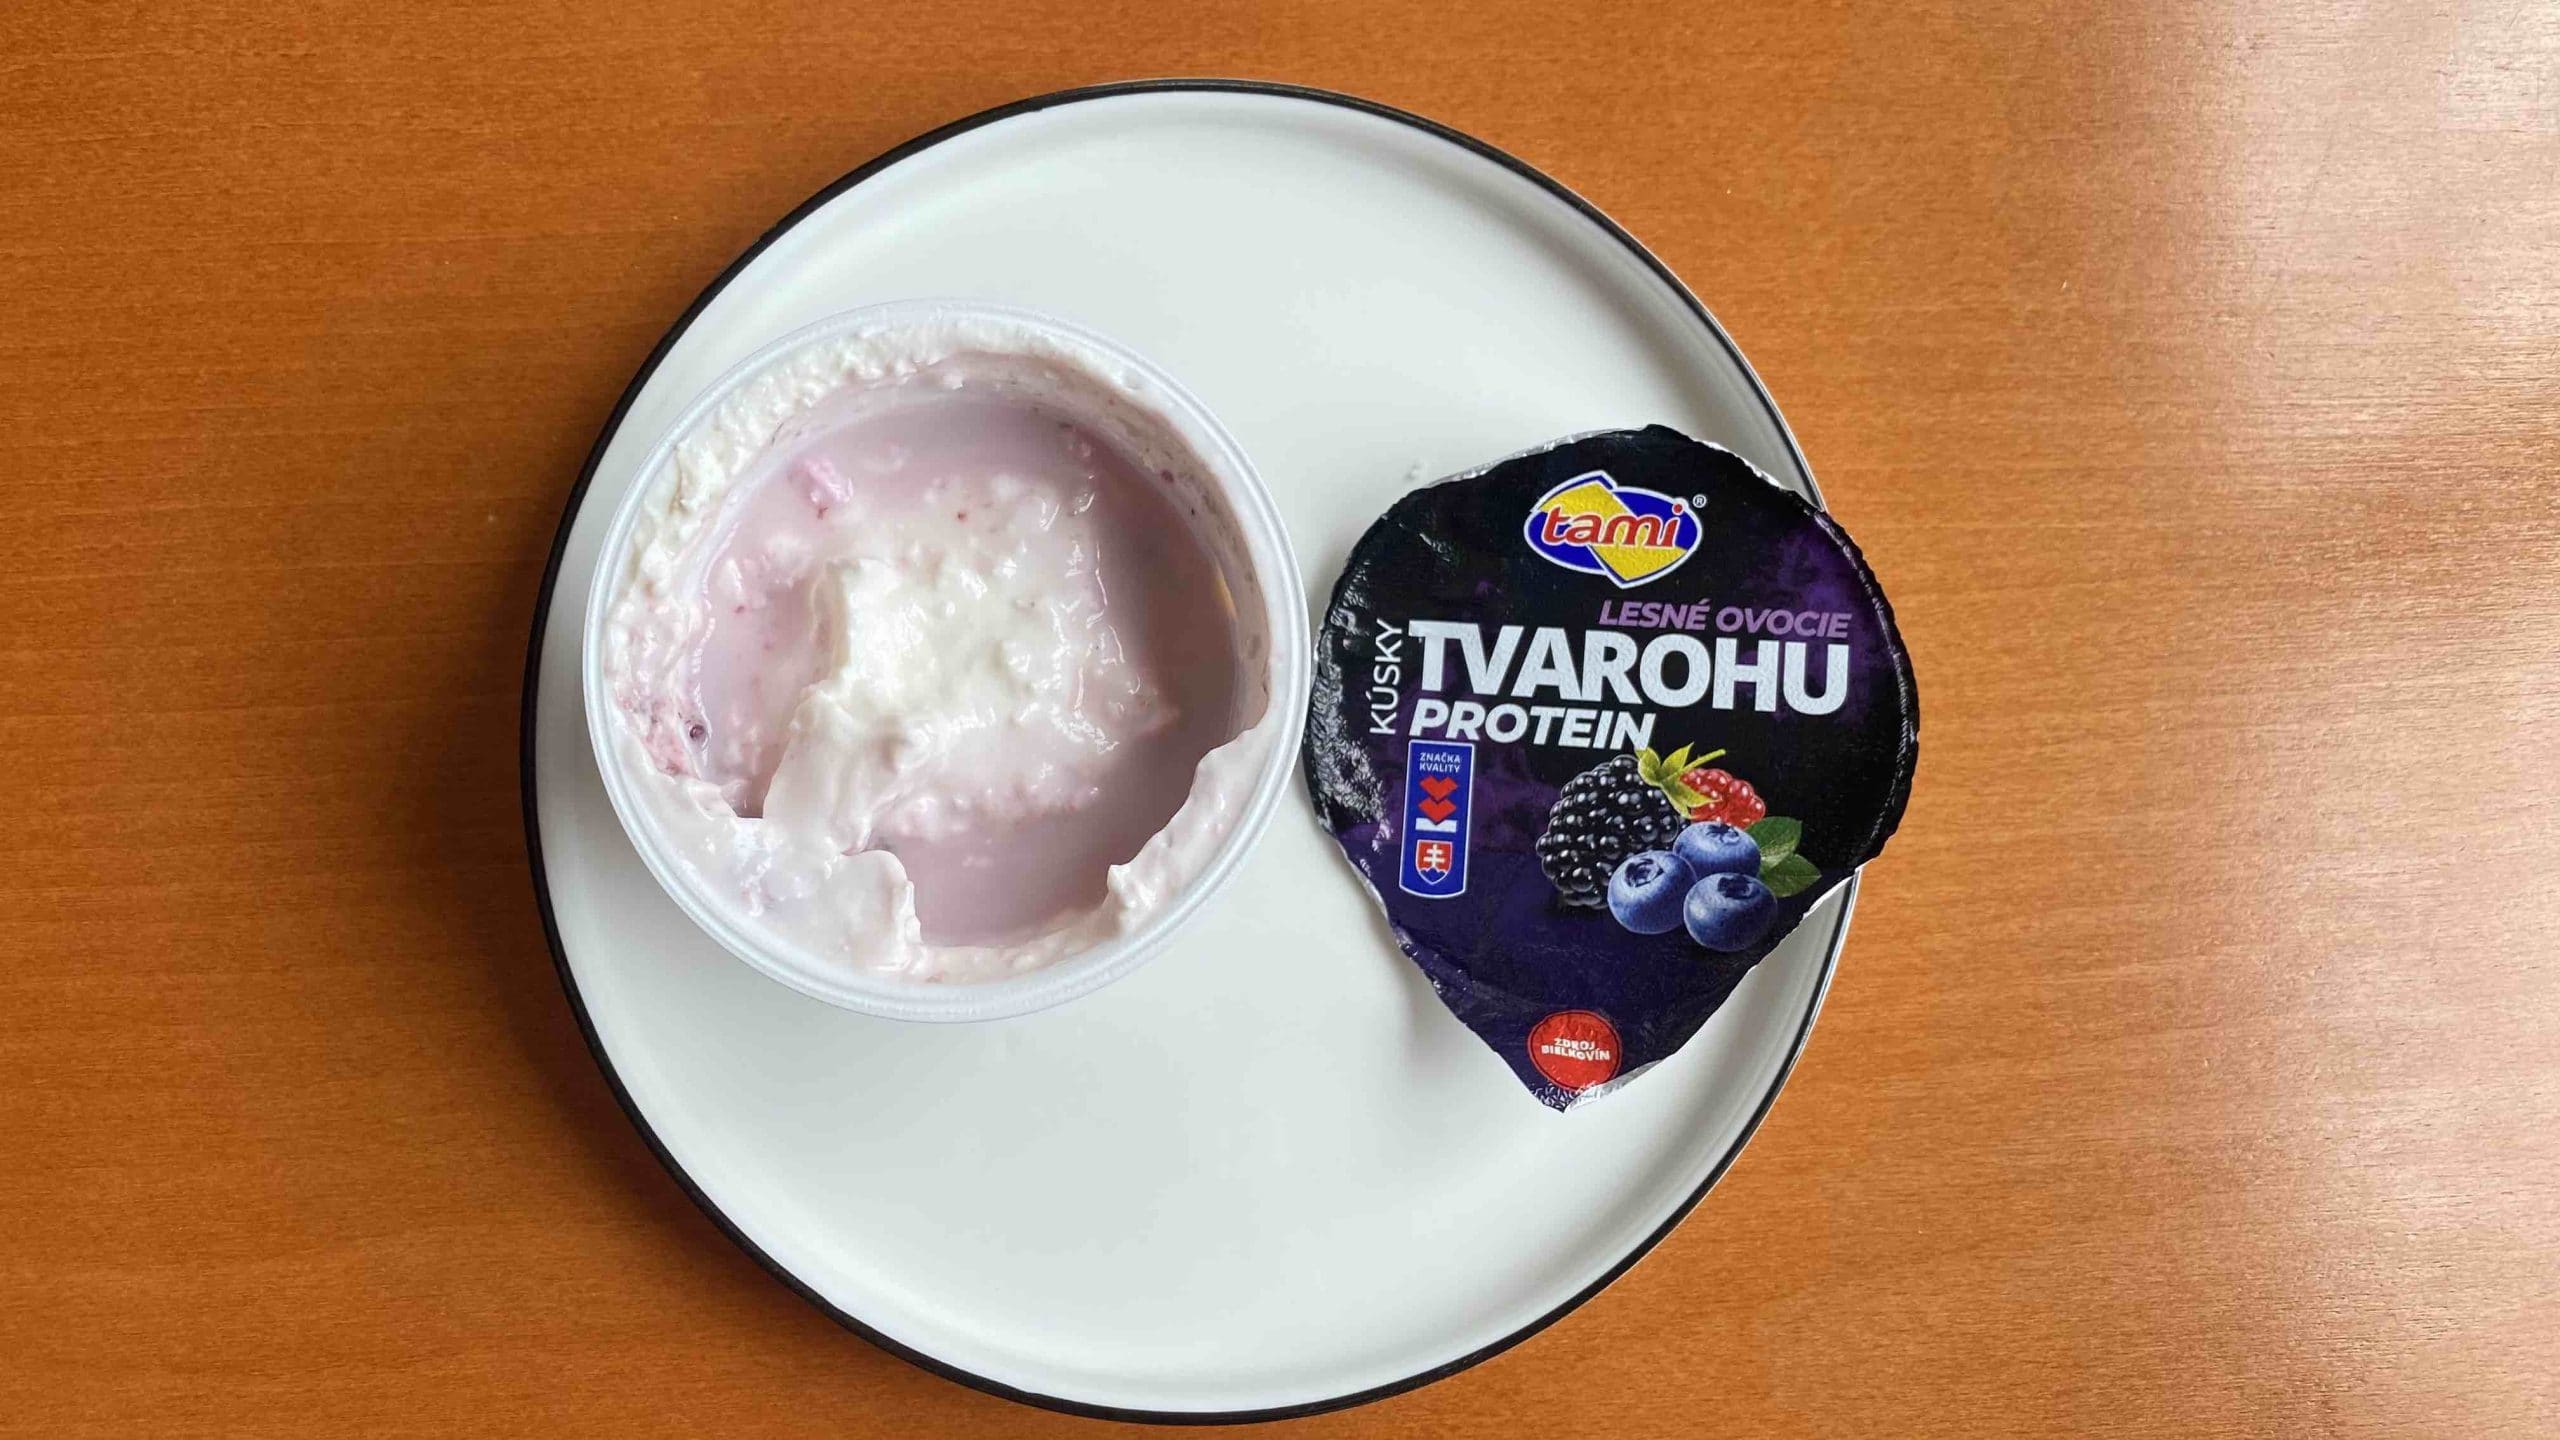 jogurt proteín tami